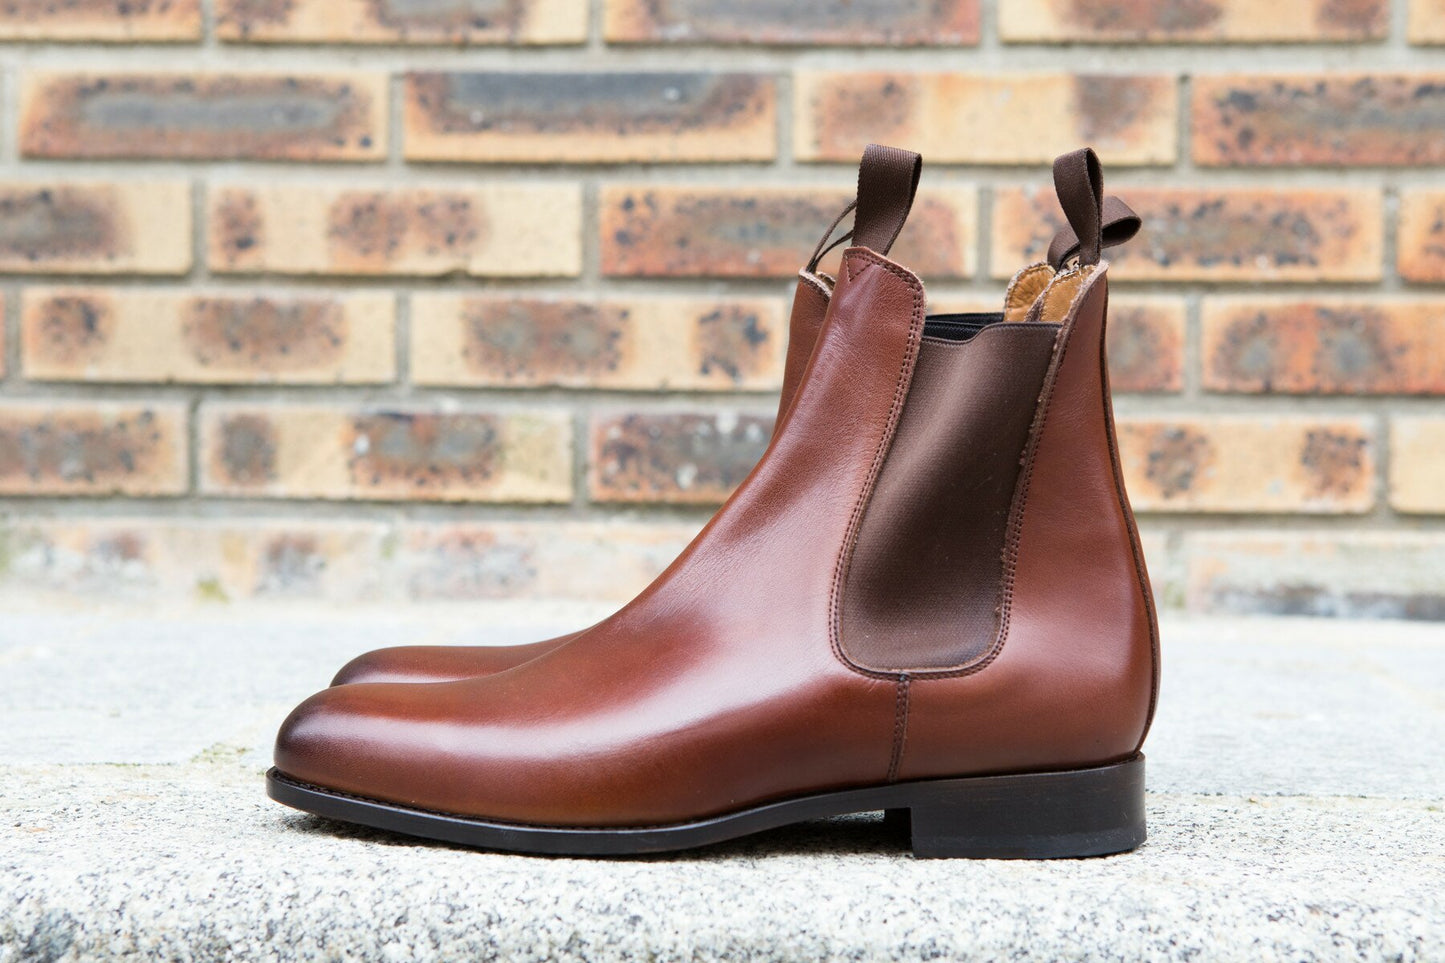 BRITISH SHOES - Boots chelsea couleur setter semelle cuir cousue